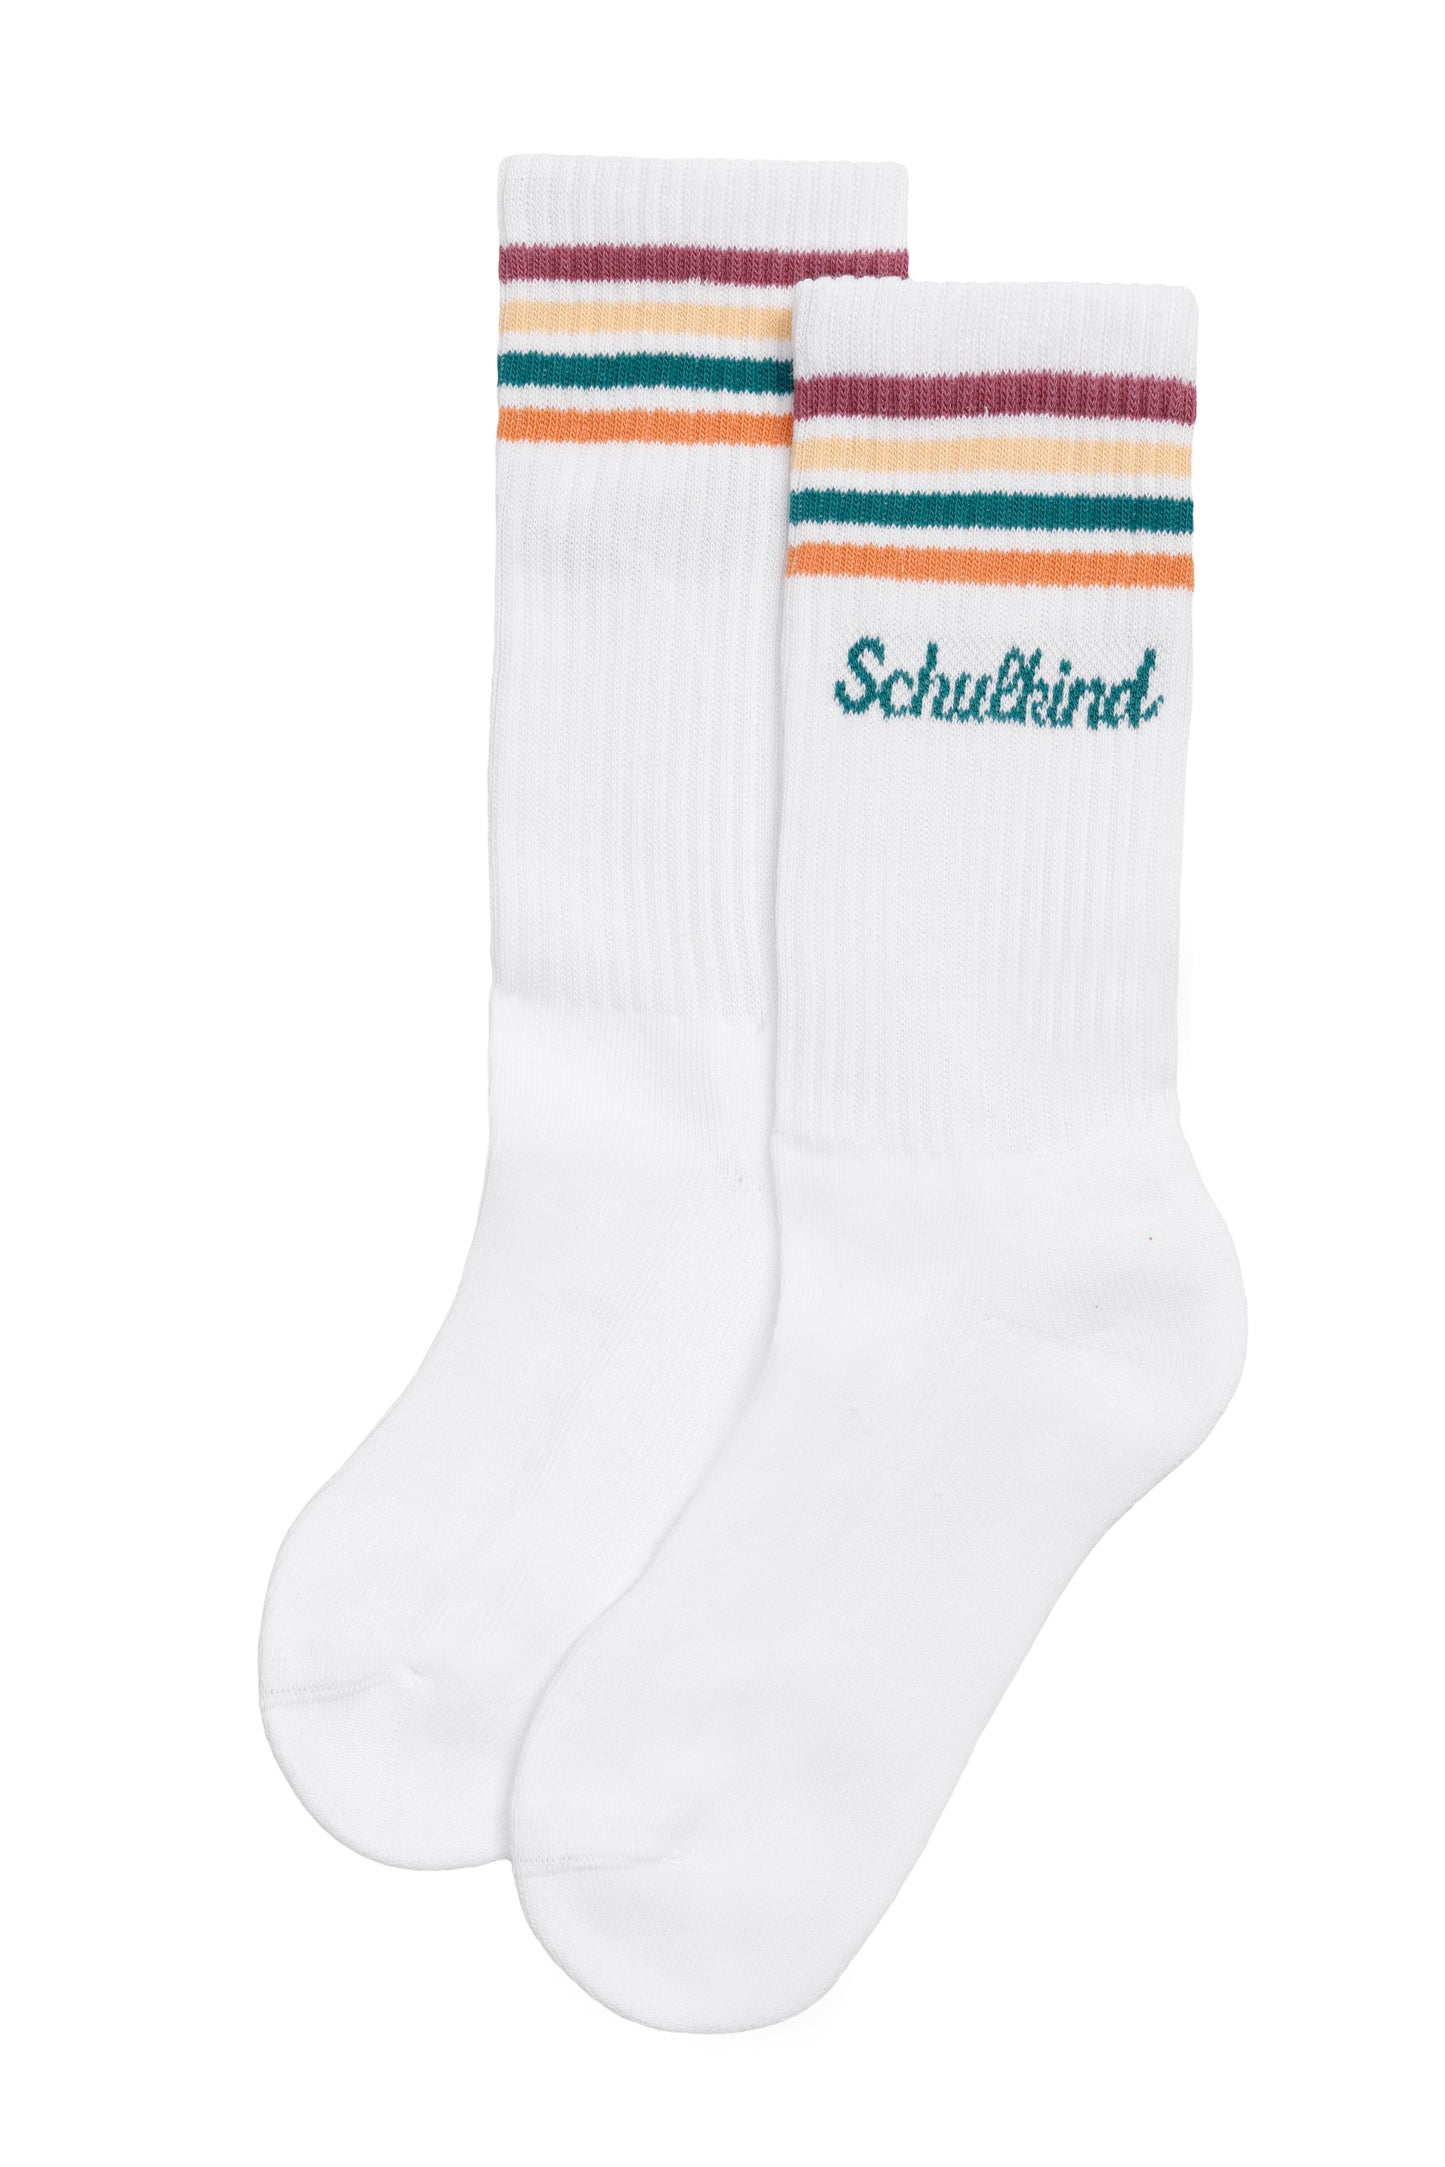 Schulkind Socken | Loones